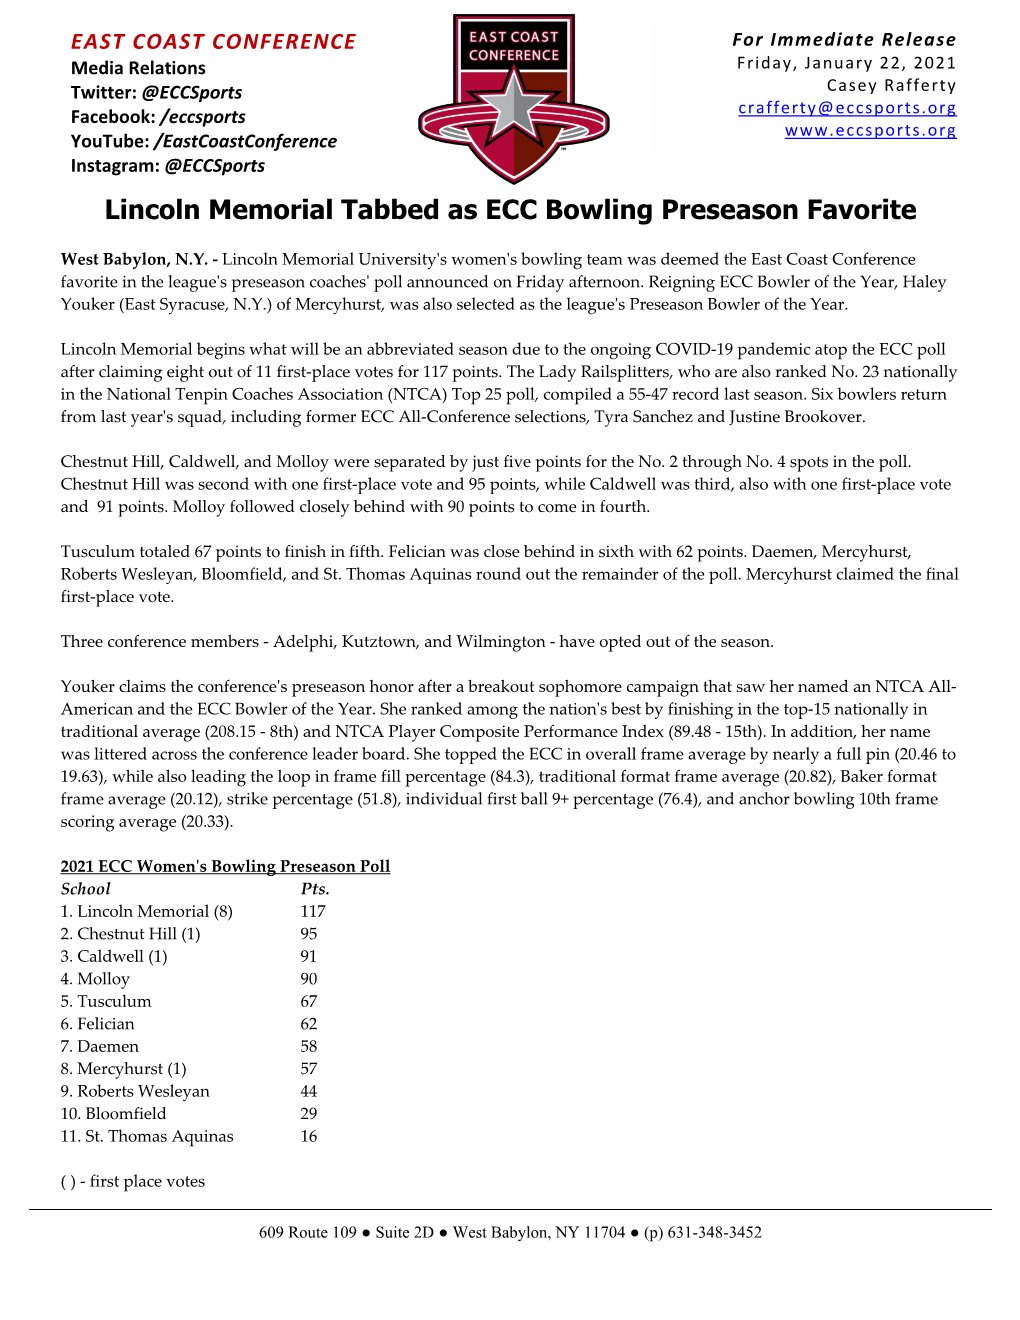 Lincoln Memorial Tabbed As ECC Bowling Preseason Favorite